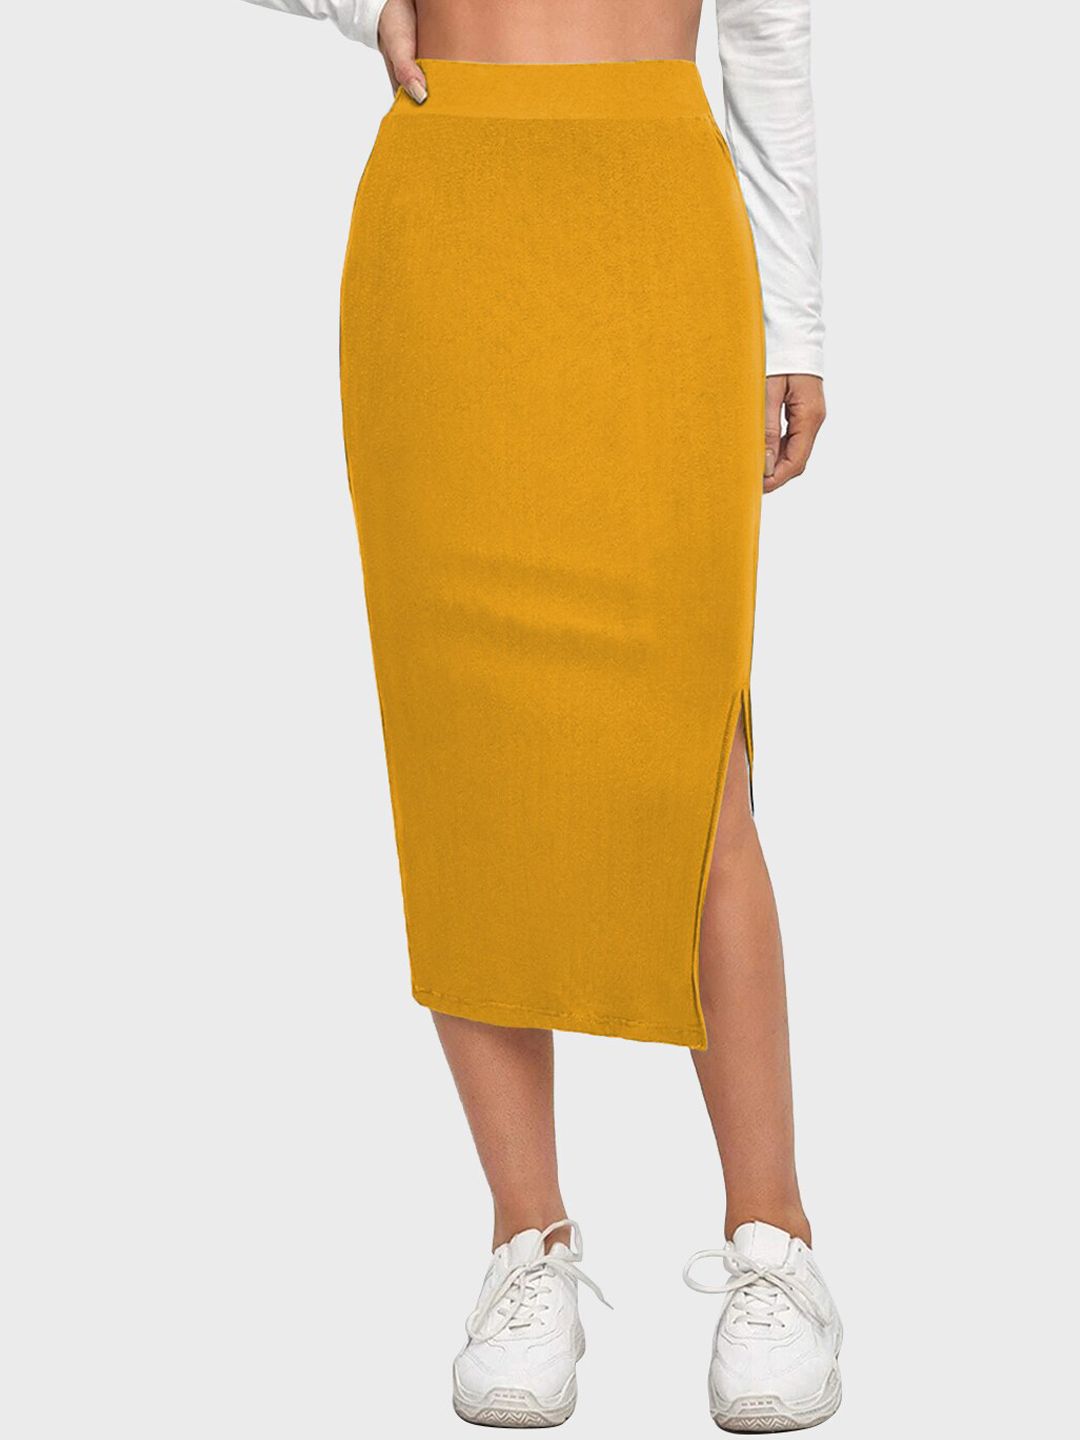 BUY NEW TREND Below Knee Slit Slip-On Pencil Skirt Price in India